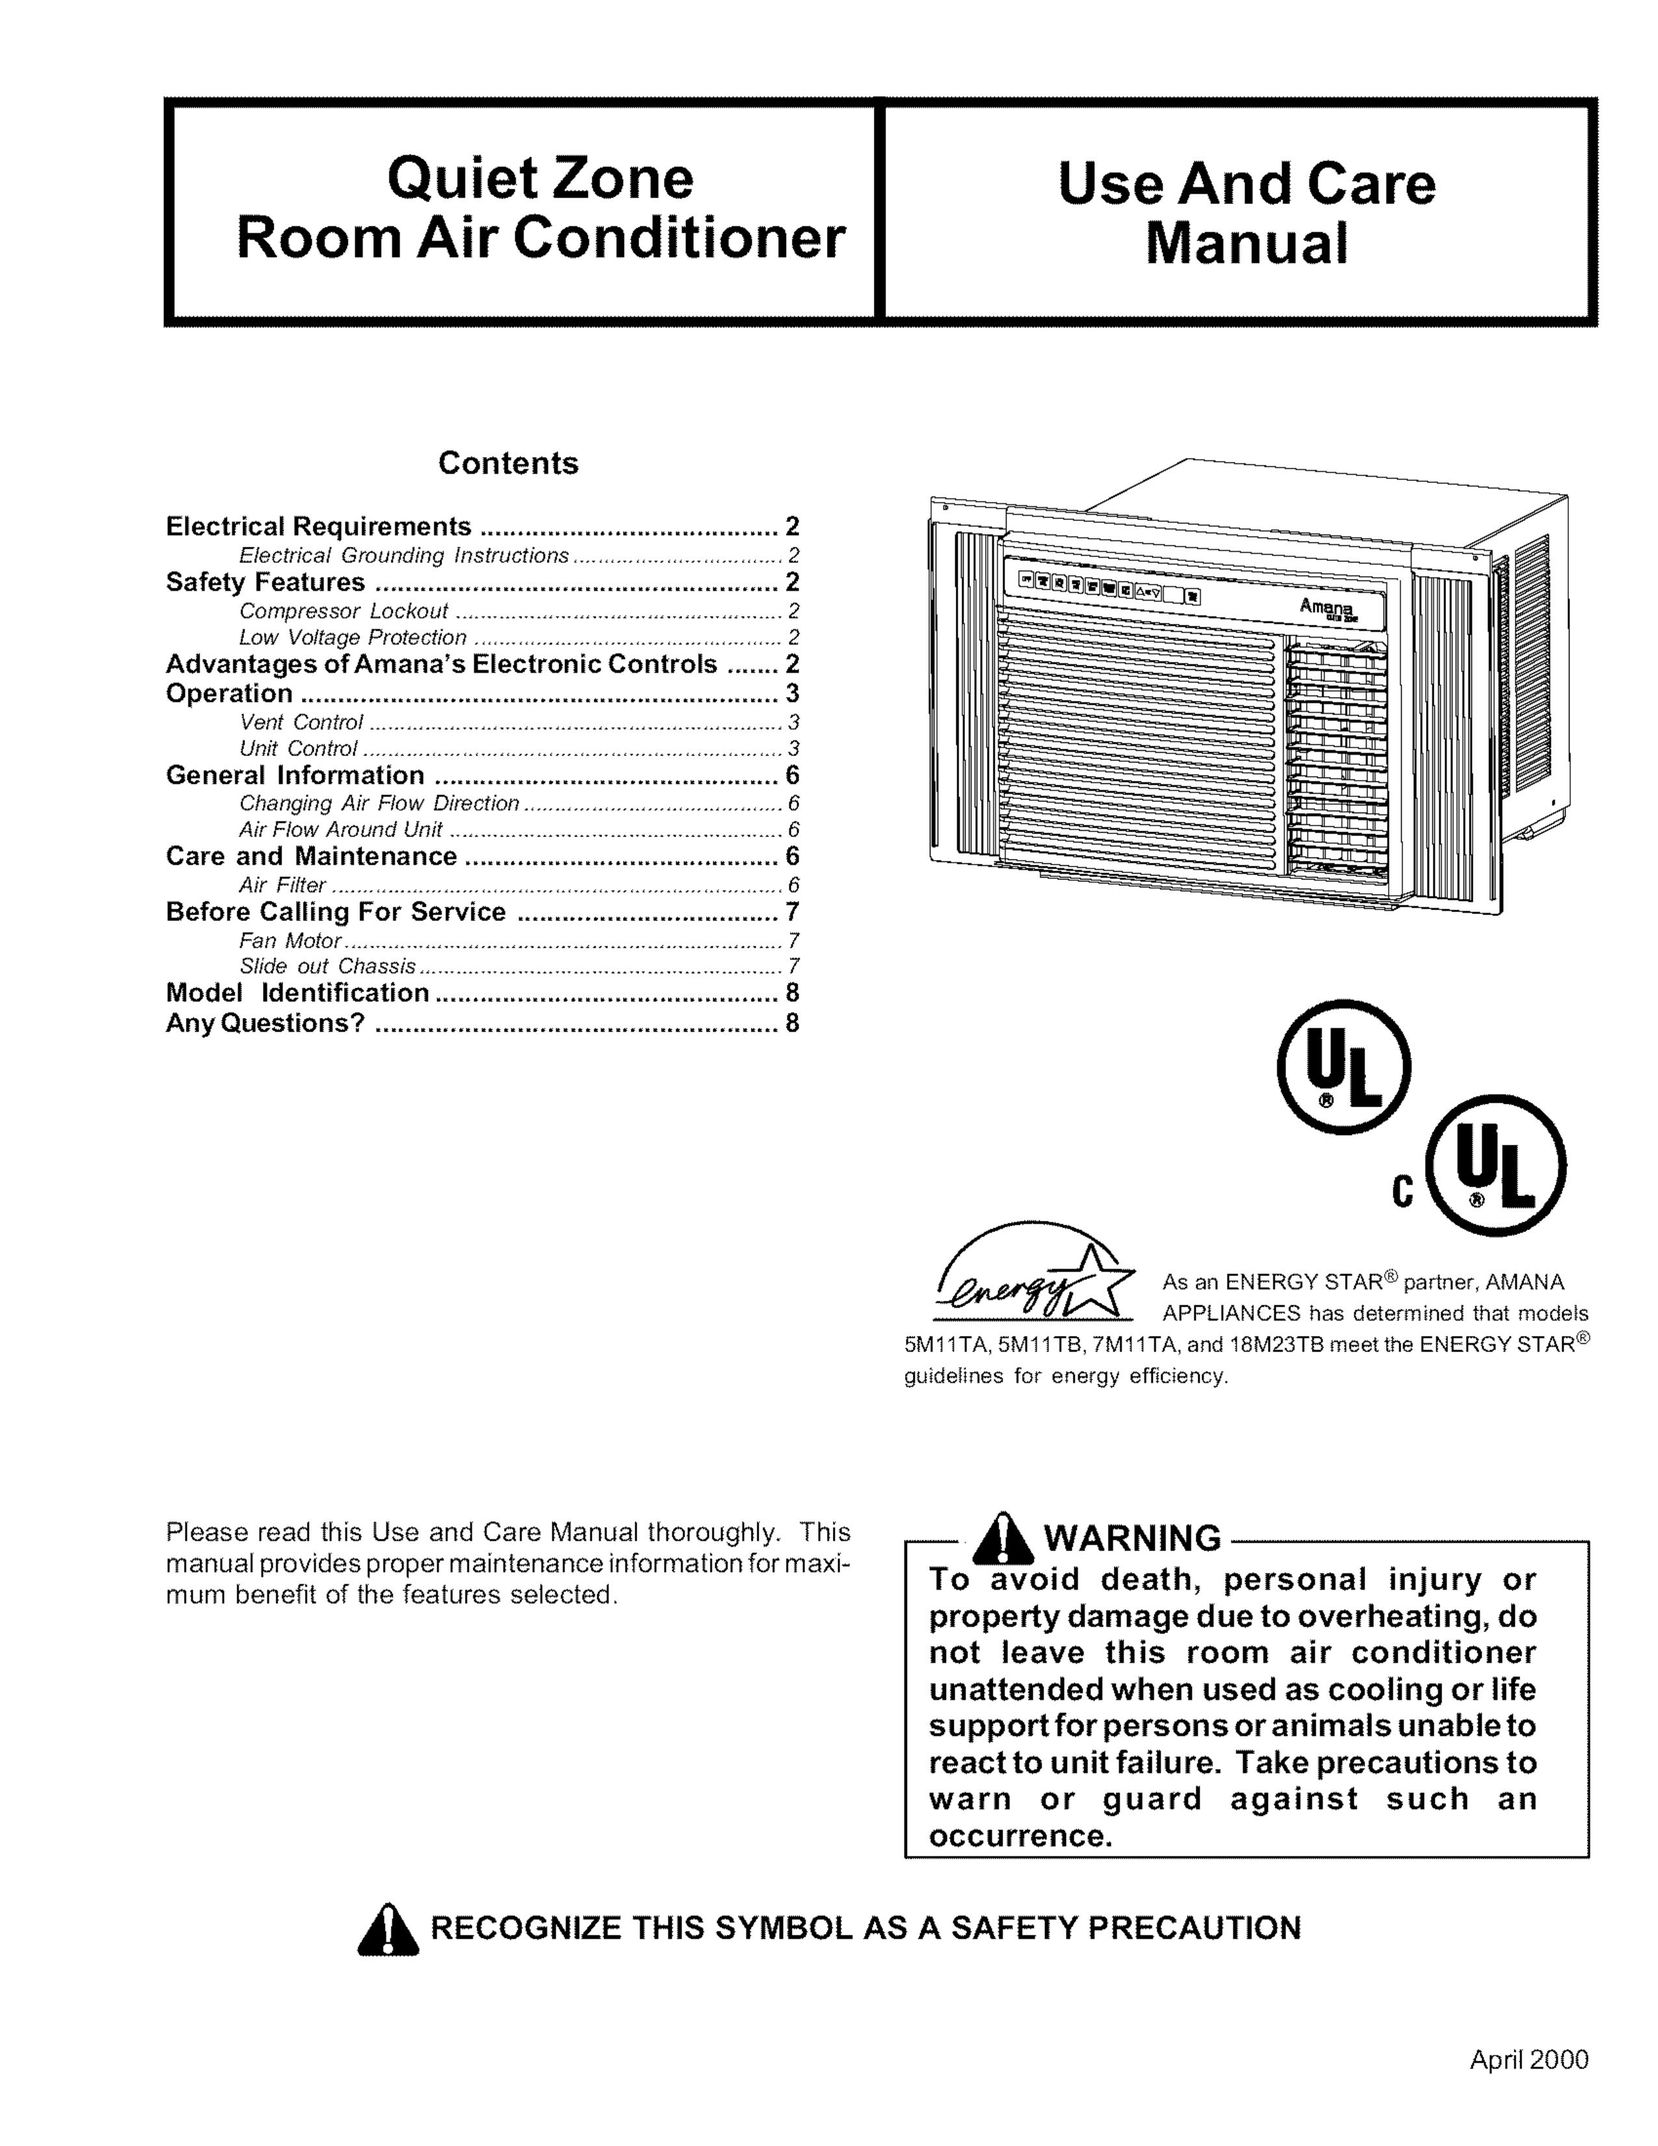 Amana 18M23TB Air Conditioner User Manual